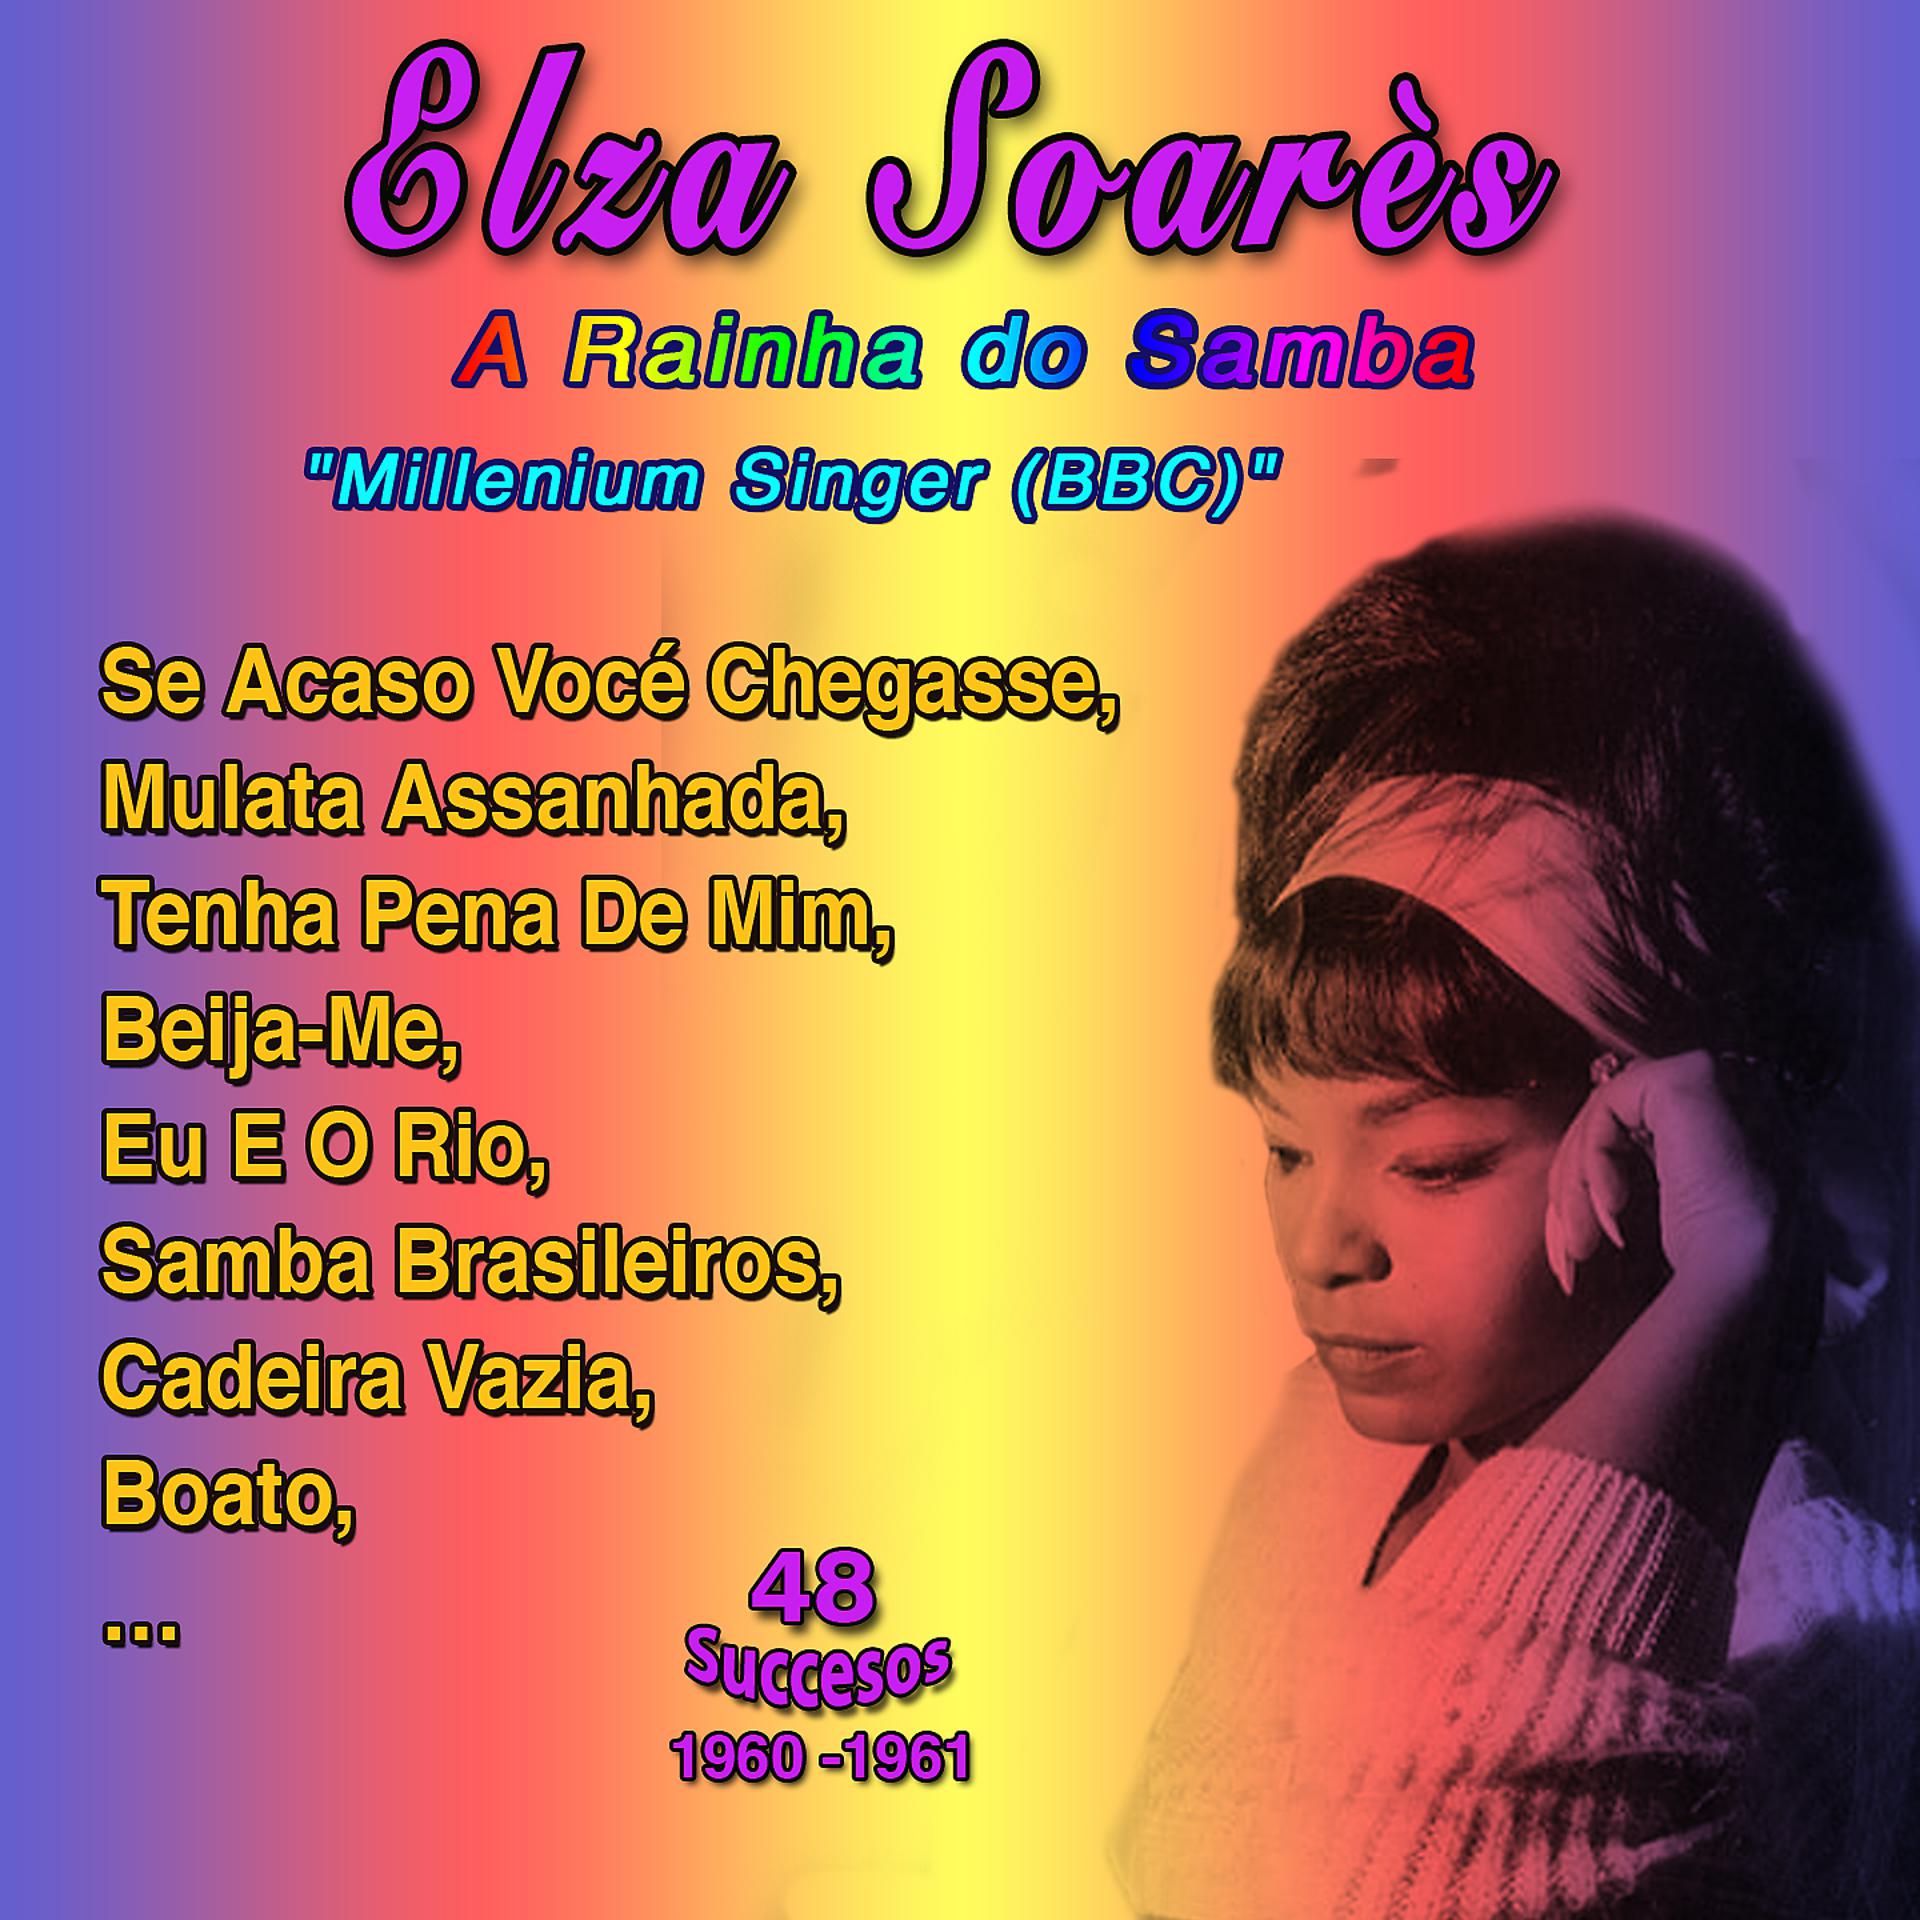 Постер альбома "Queen of Samba - Singer of the Millennium (BBC)" - Elza Soares: Se Acaso Você Chegasse